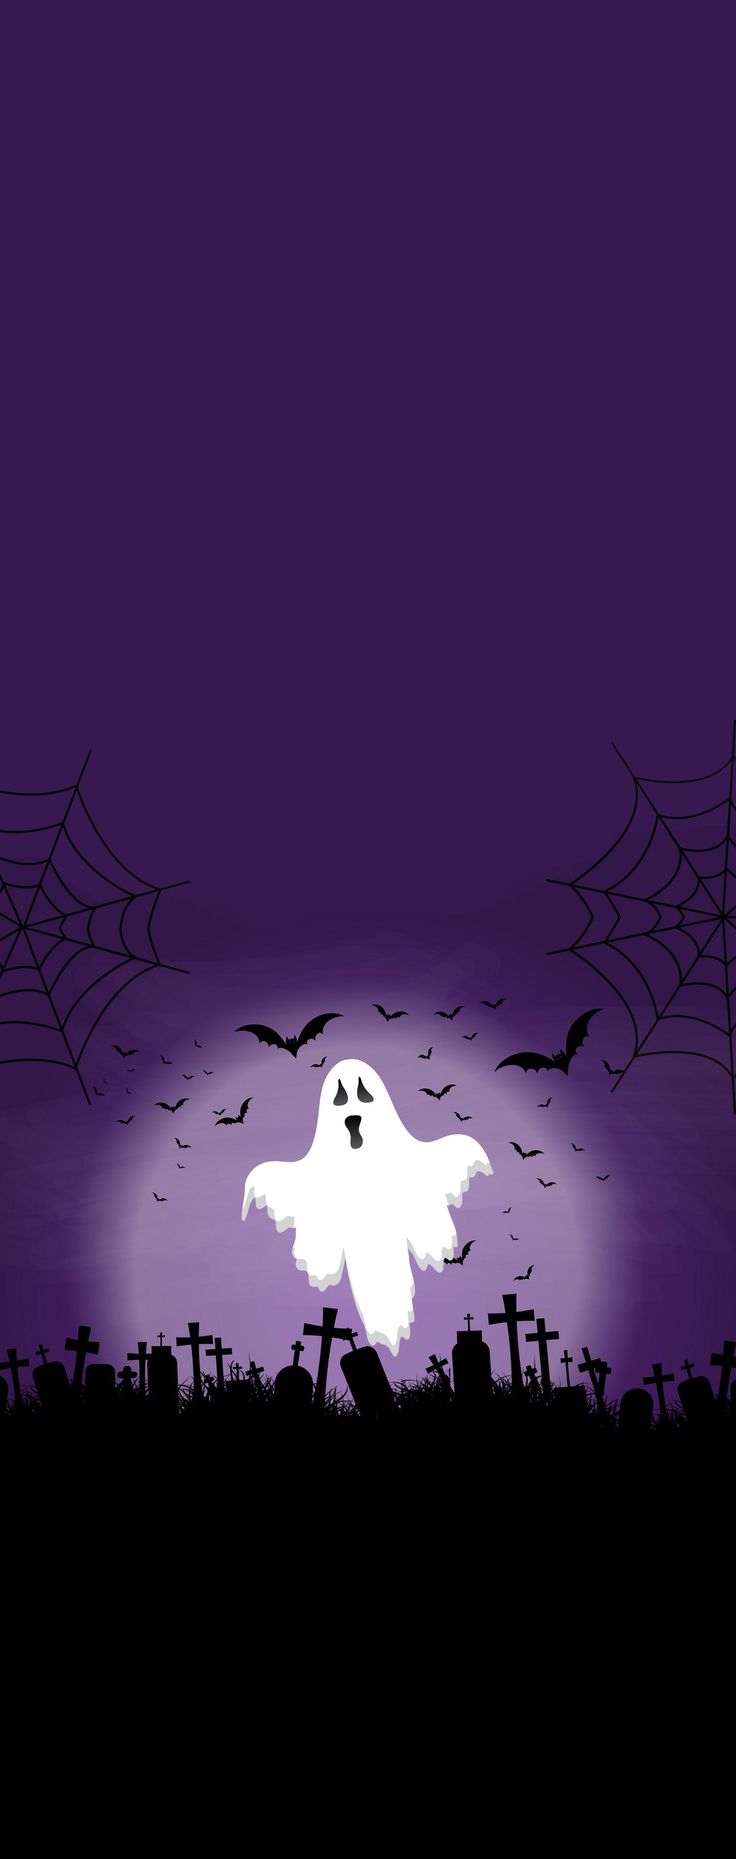 Halloween Phone Wallpaper. Halloween background, Halloween wallpaper, Spooky halloween picture